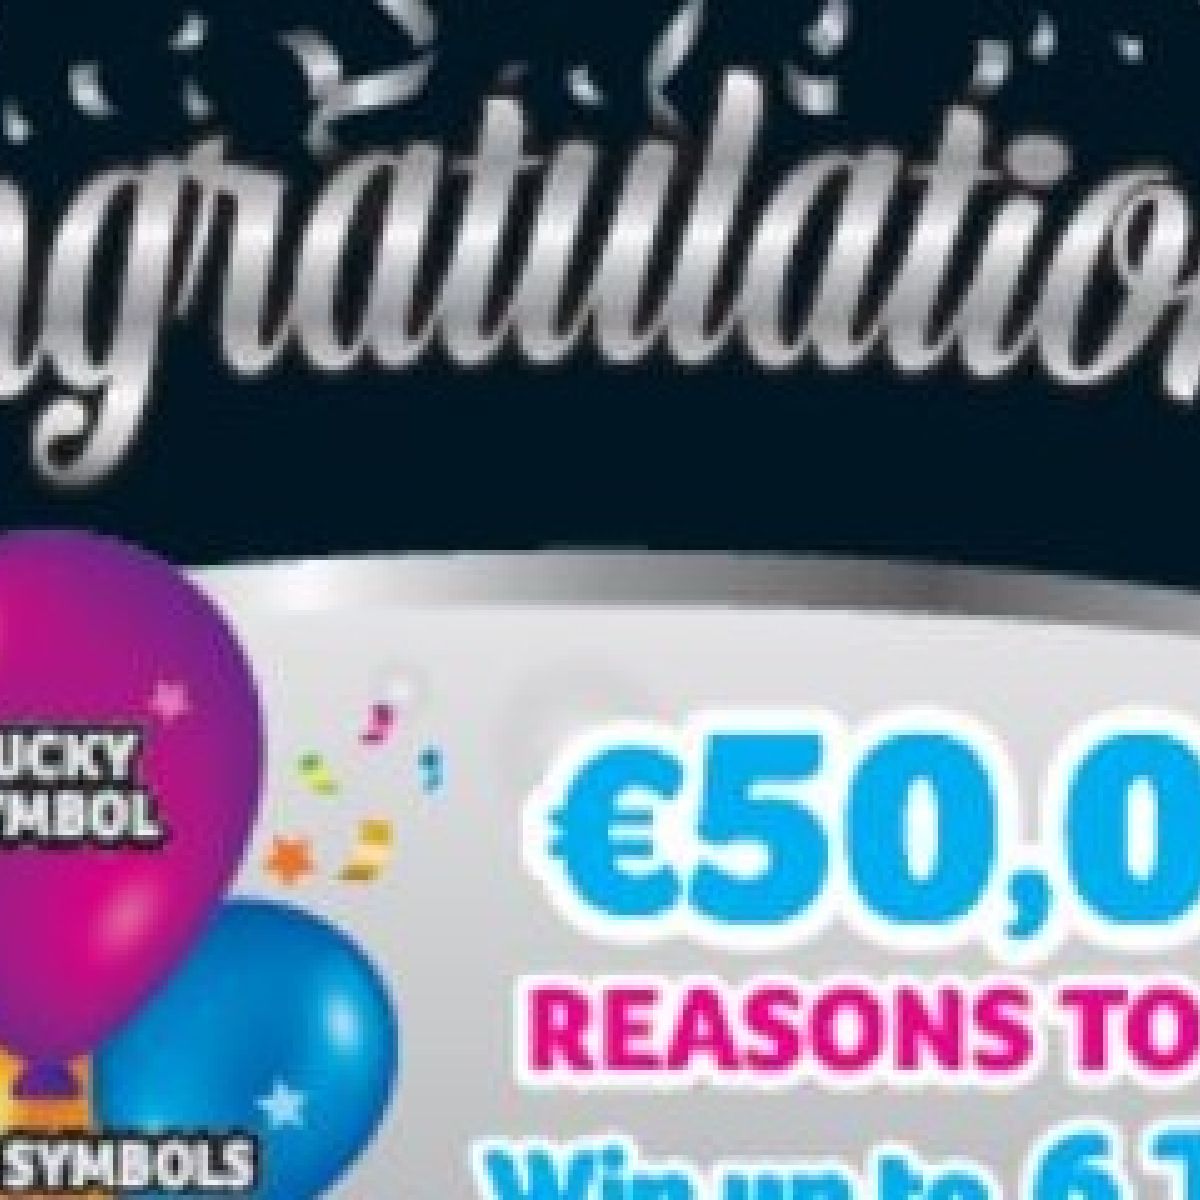 irish lotto results 6 april 2019